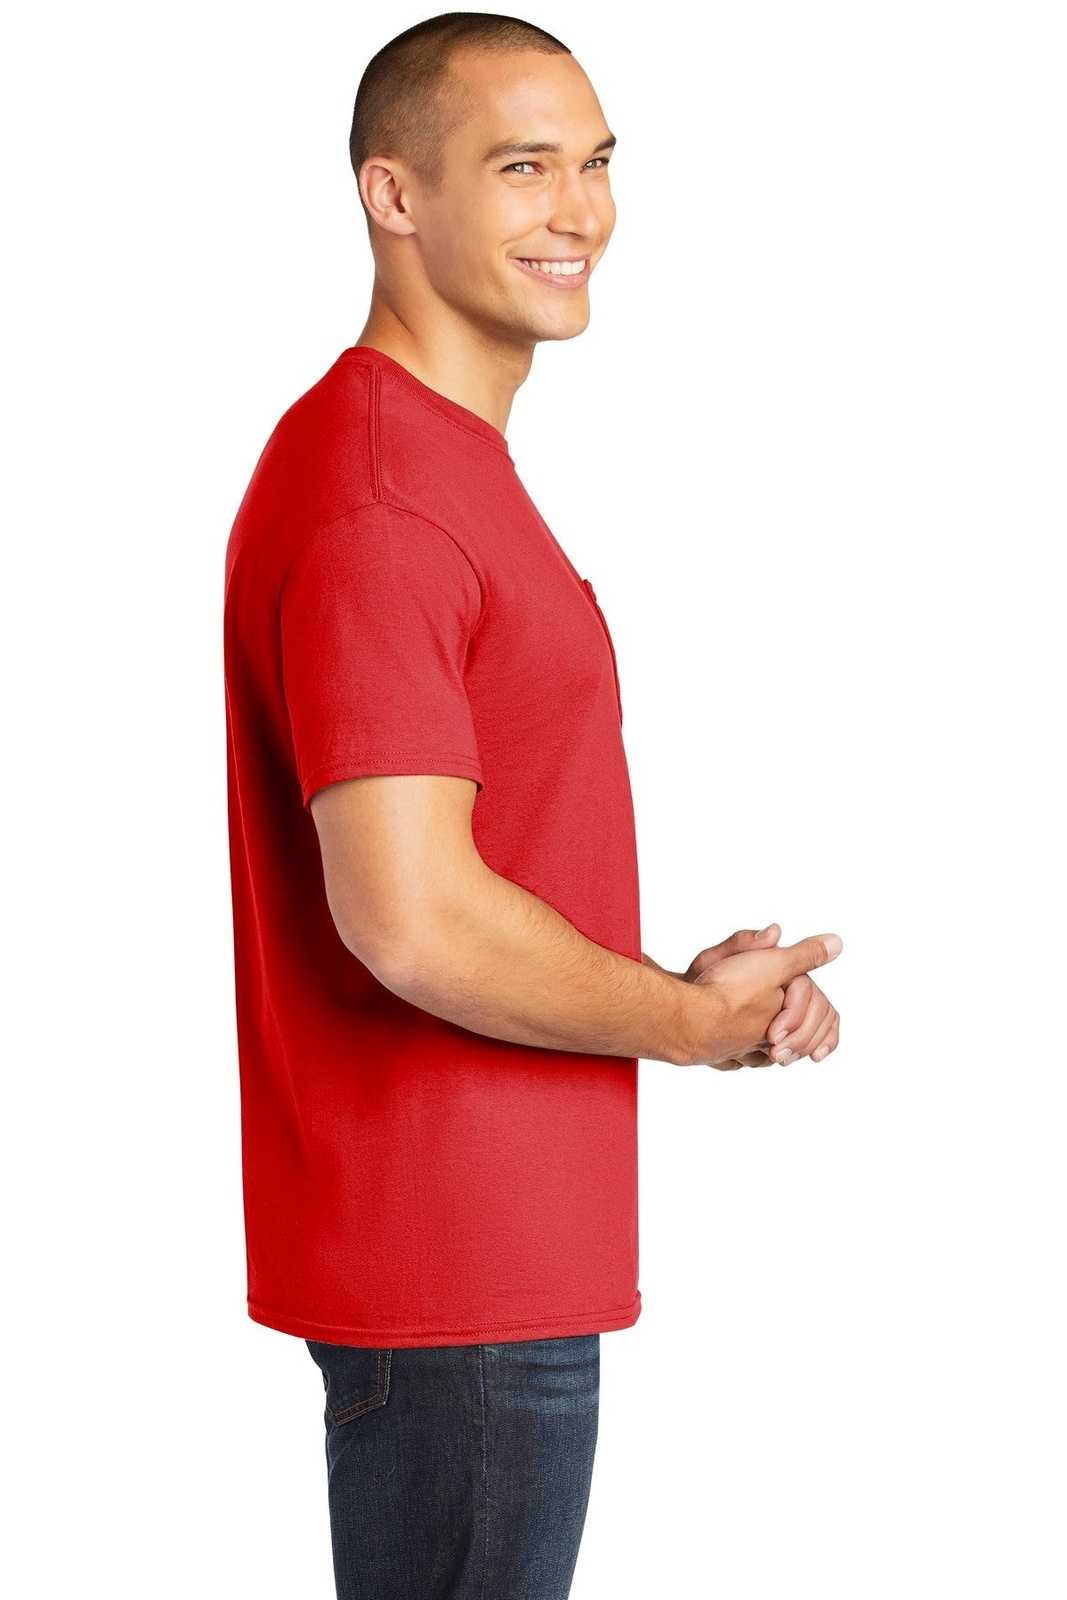 Gildan 5300 Heavy Cotton 100% Cotton Pocket T-Shirt - Red - HIT a Double